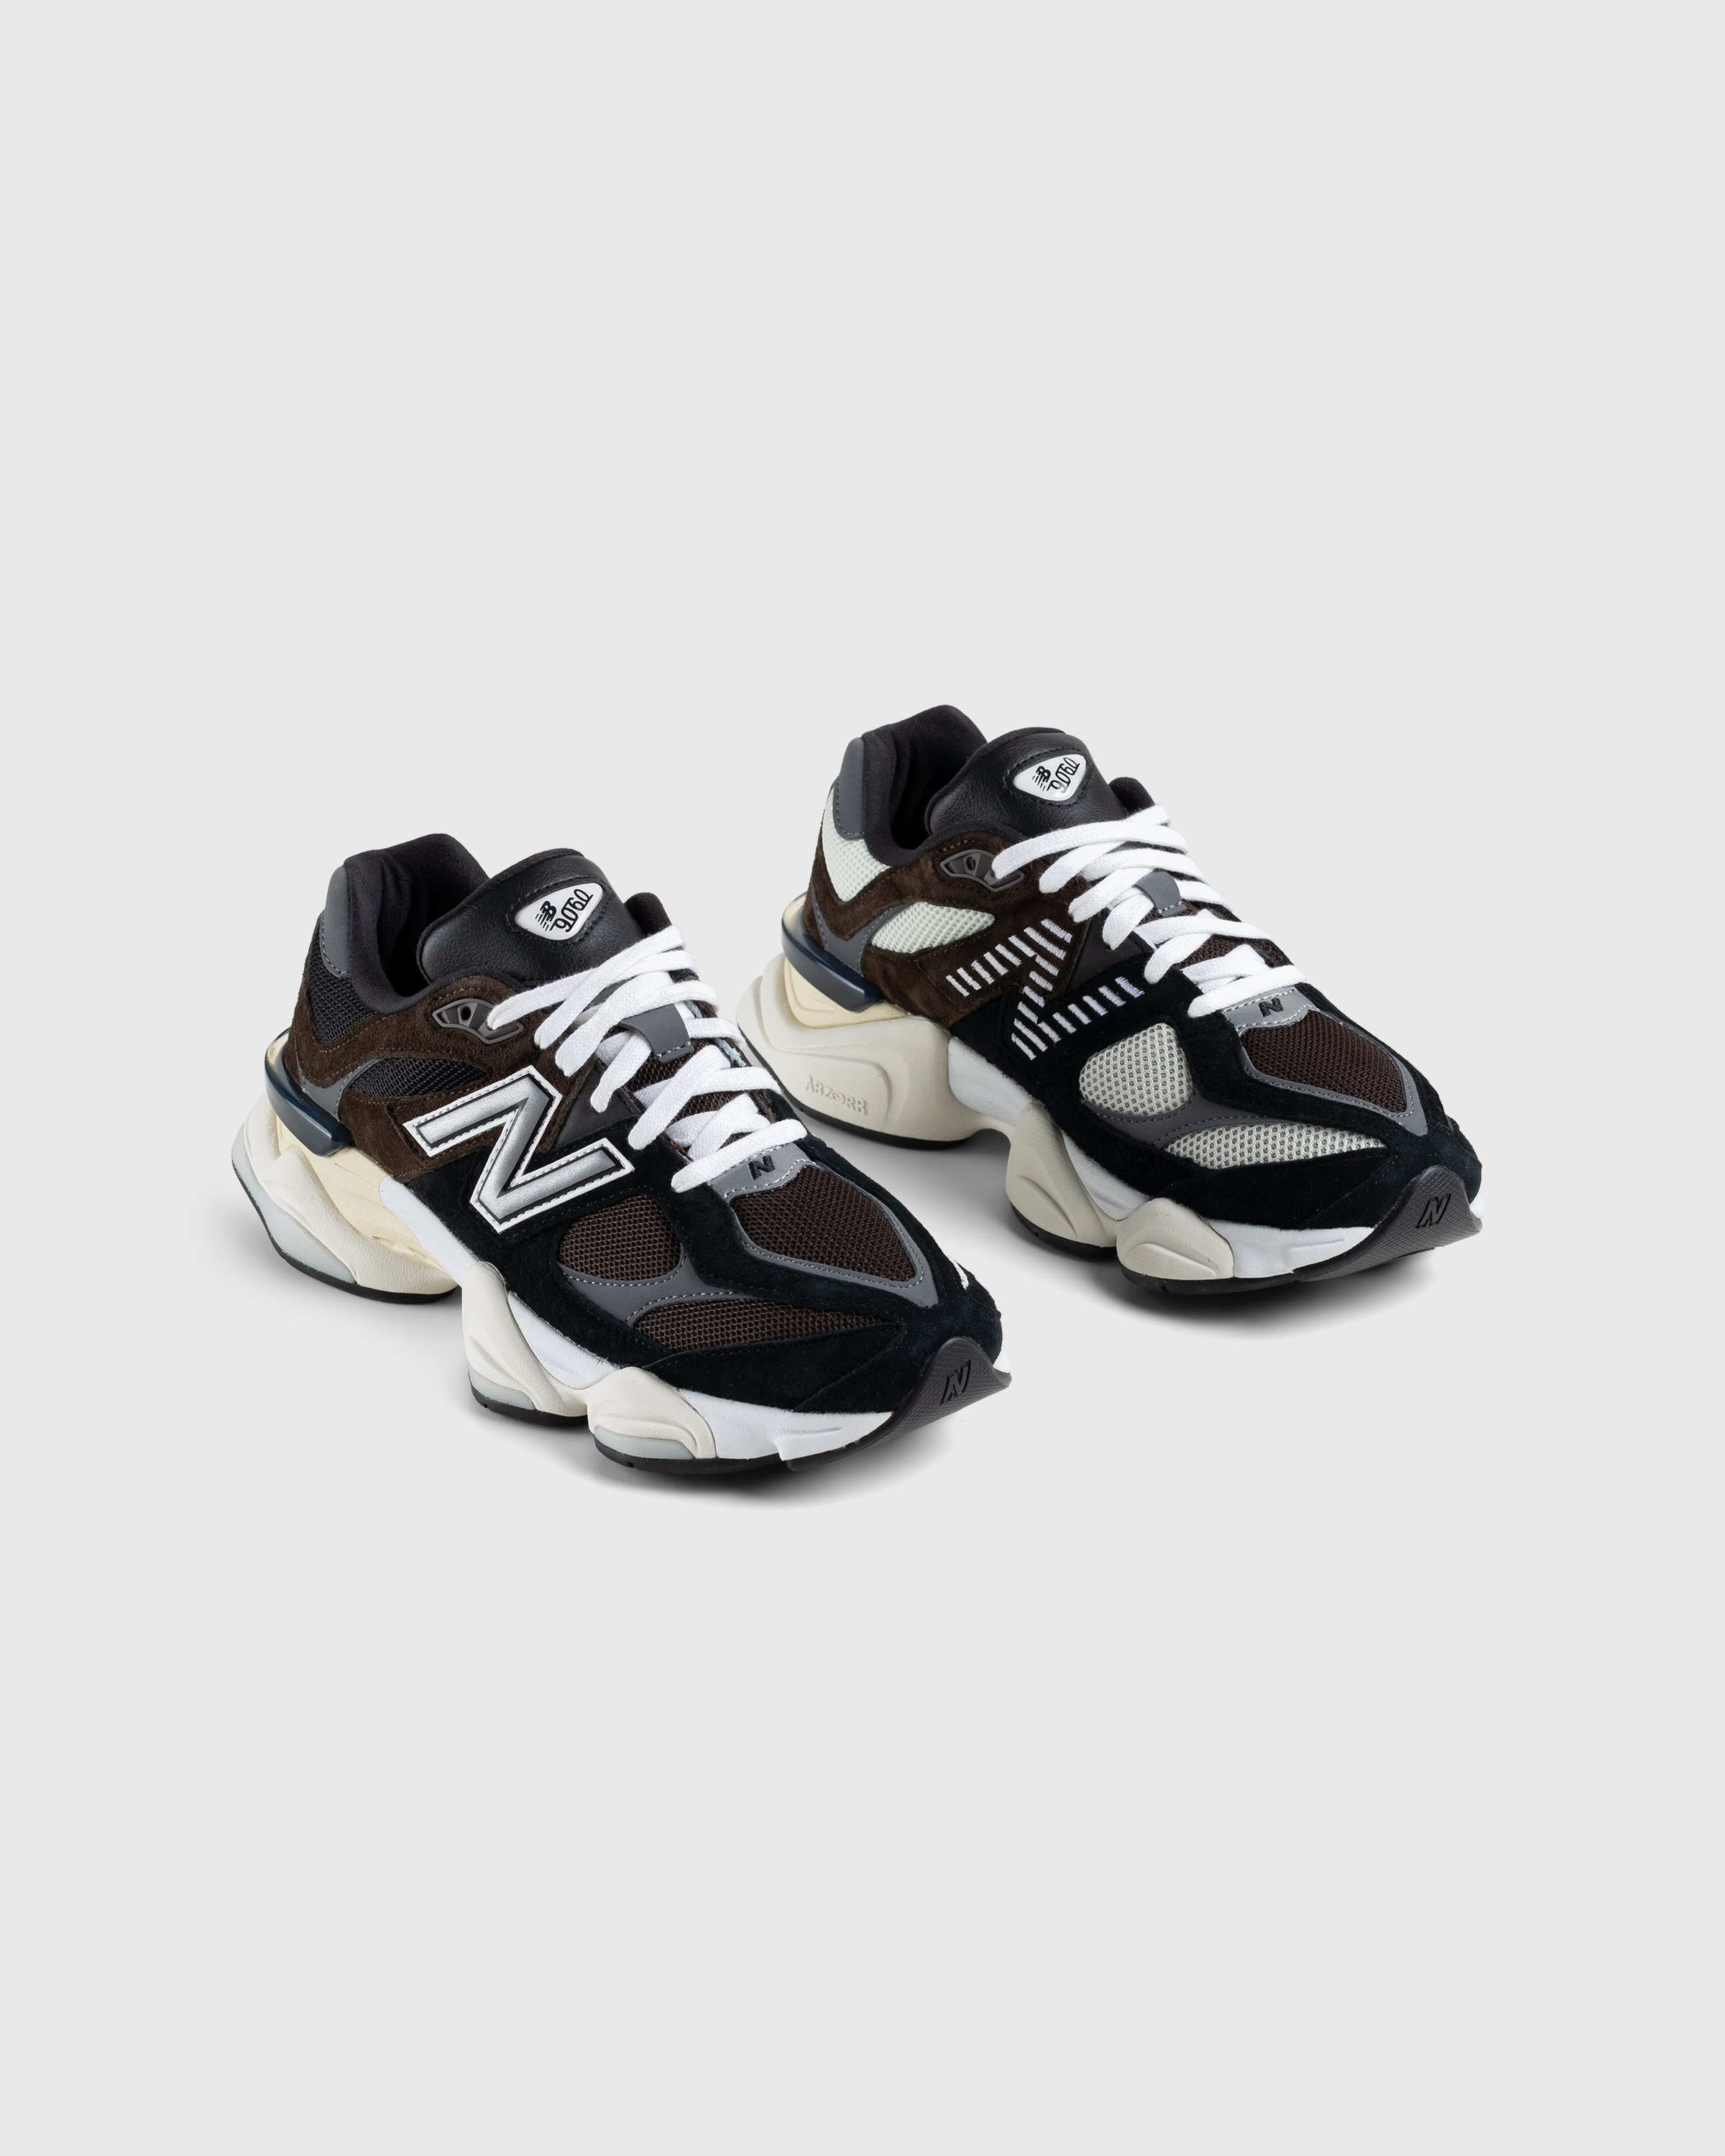 New Balance - U9060BRN Dark Brown - Footwear - Brown - Image 3